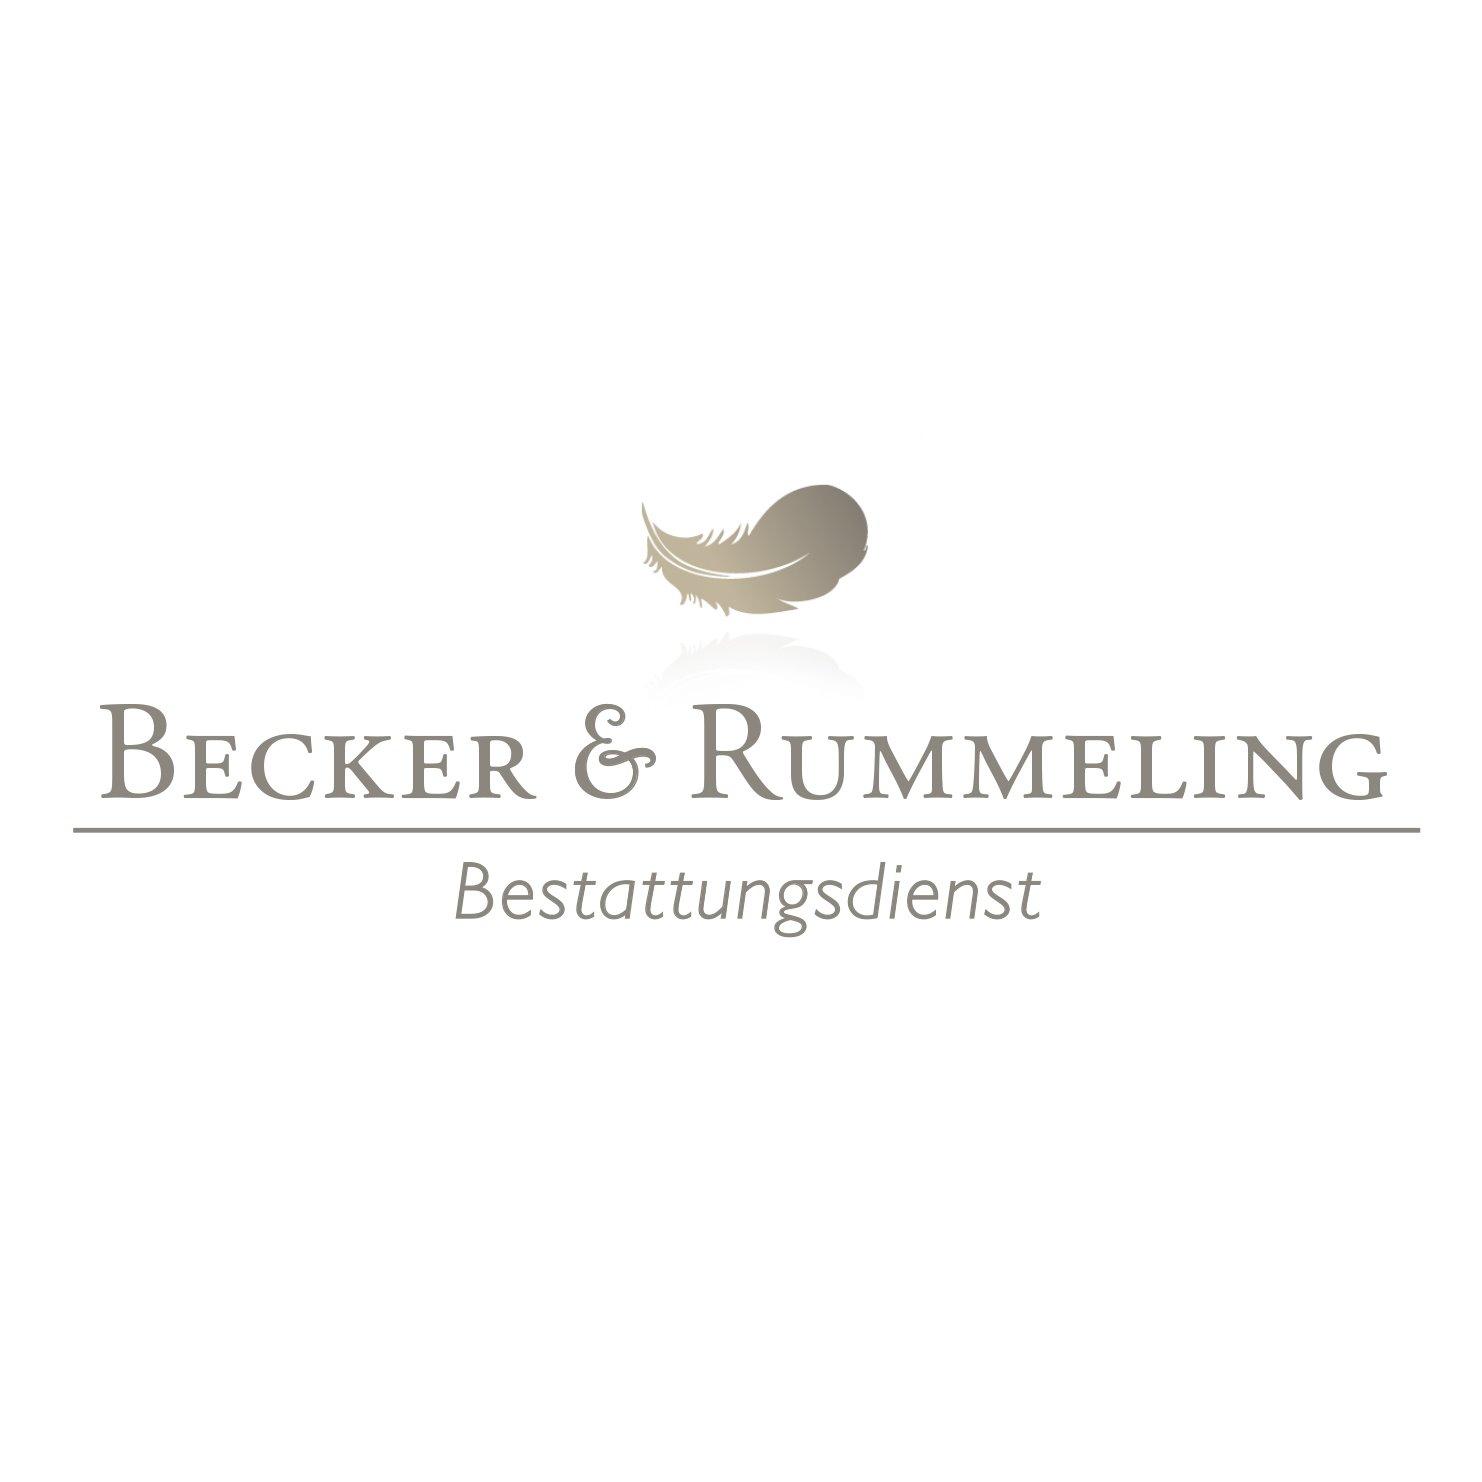 Bestattungsdienst Becker&Rummeling Logo